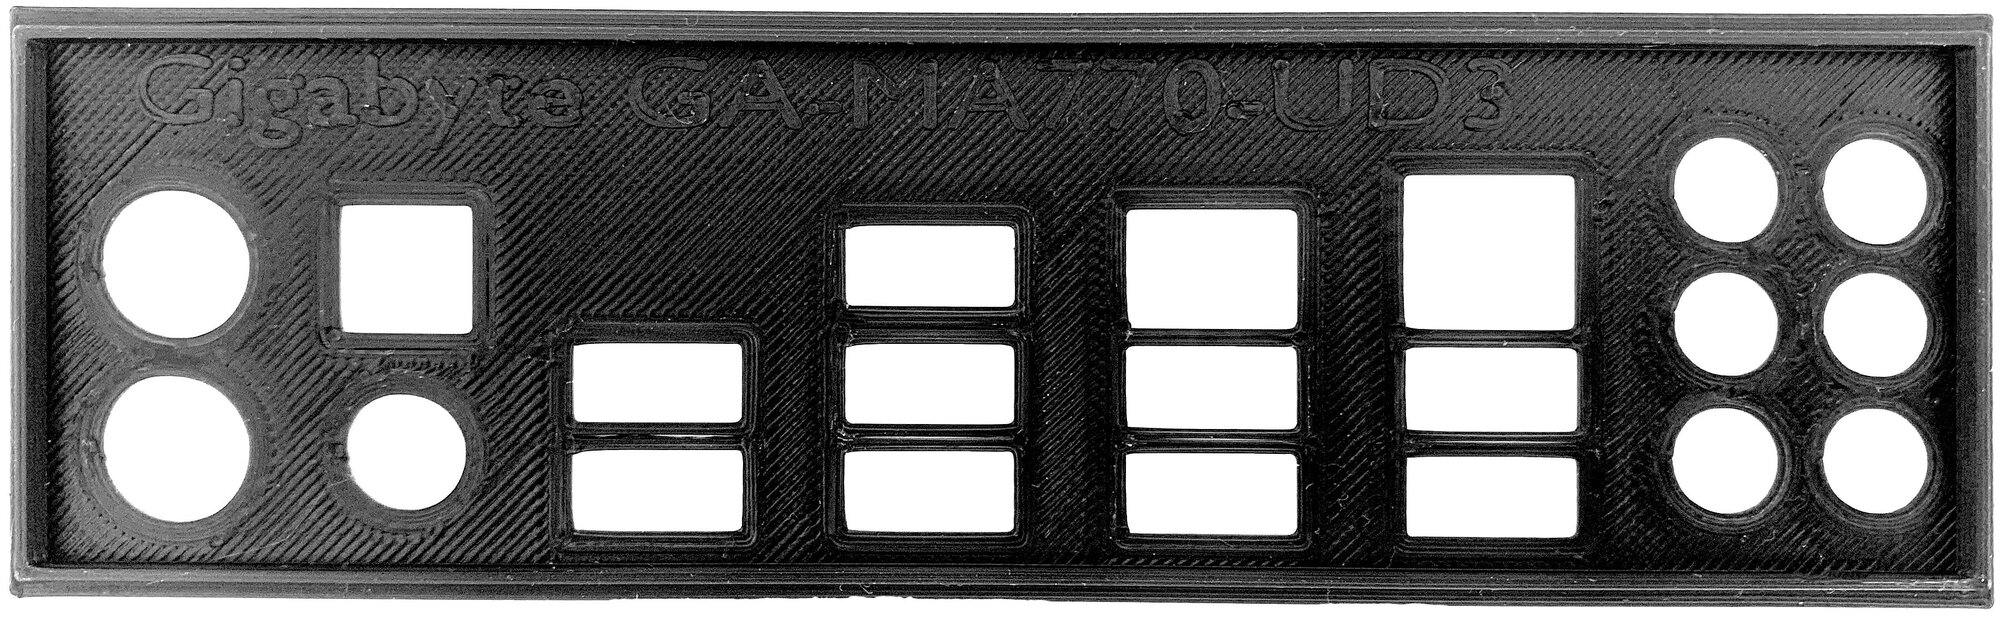 Пылезащитная заглушка, задняя панель для материнской платы Gigabyte GA-MA770-UD3, черная